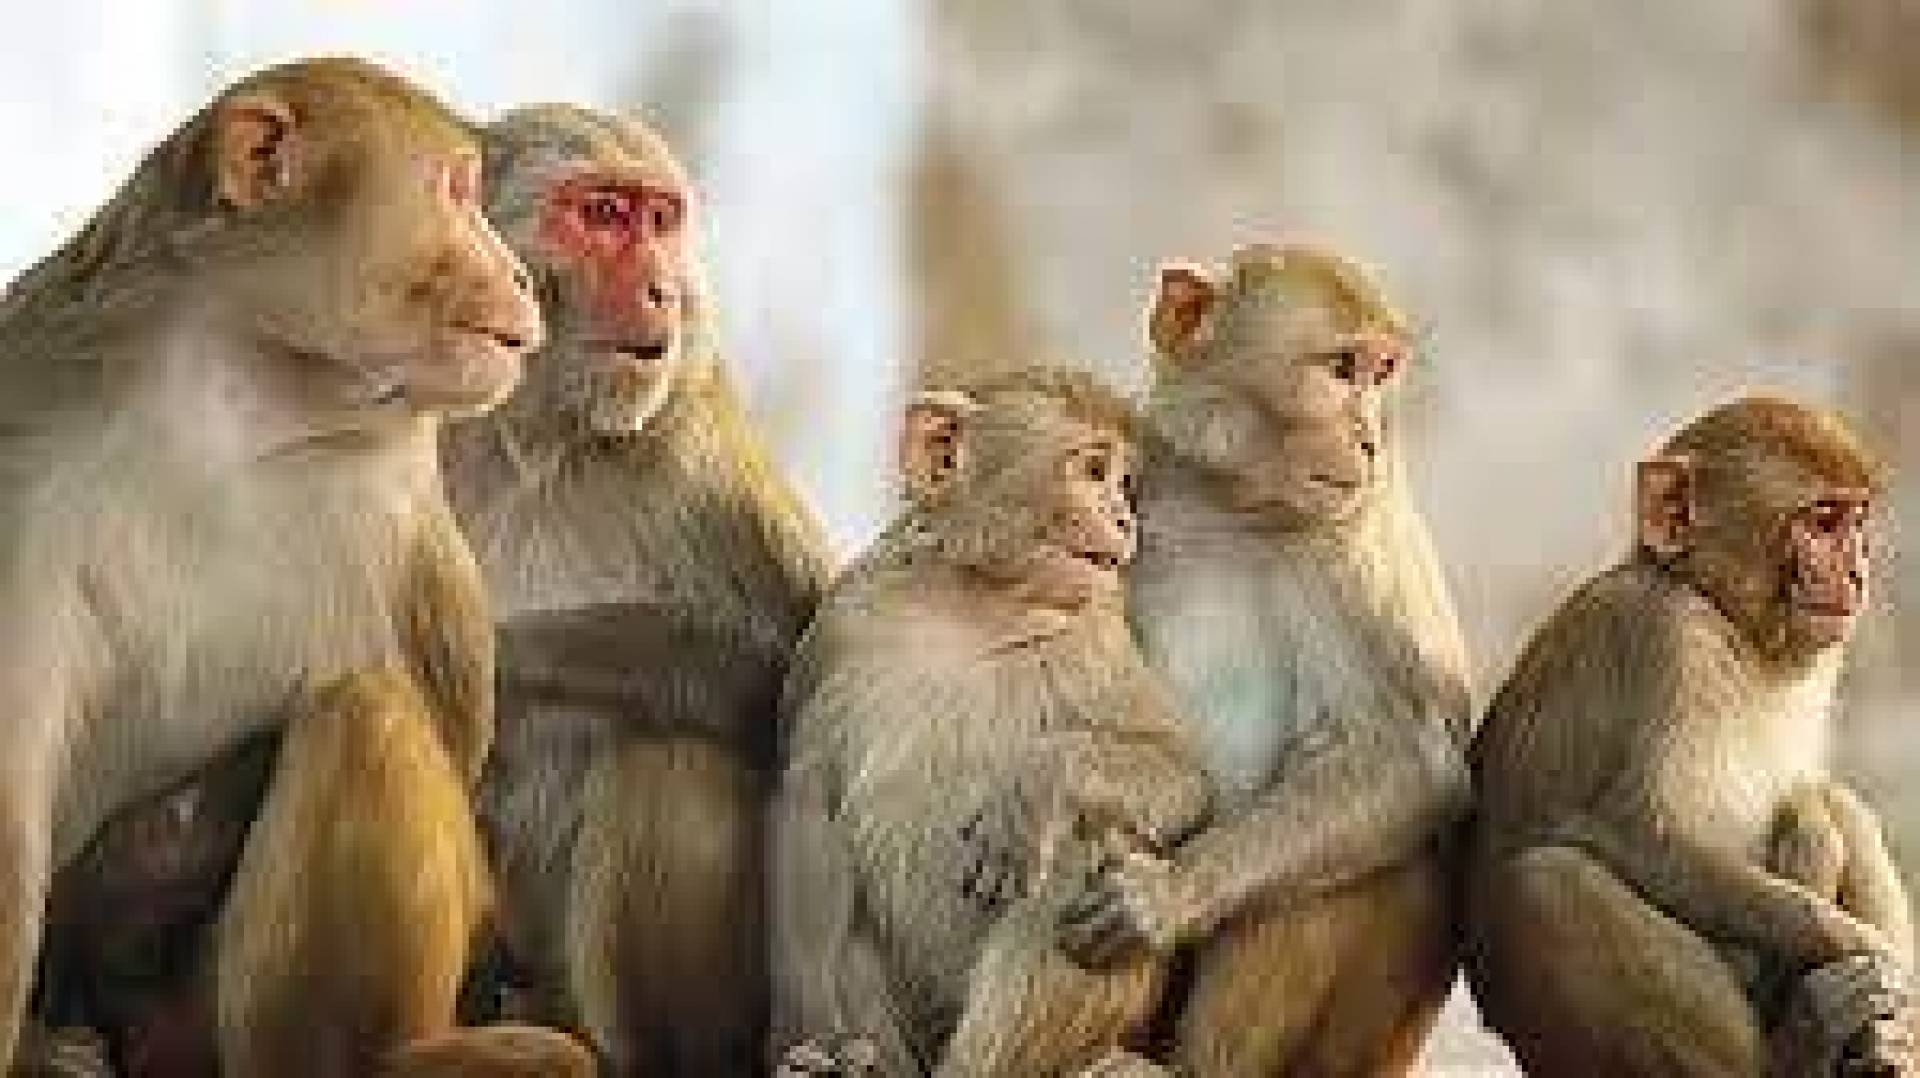 كتب الأستاذ حليم خاتون: إذا اتفق القردة، سرقوا المحصول... وإذا اختلفوا، أتلفوه